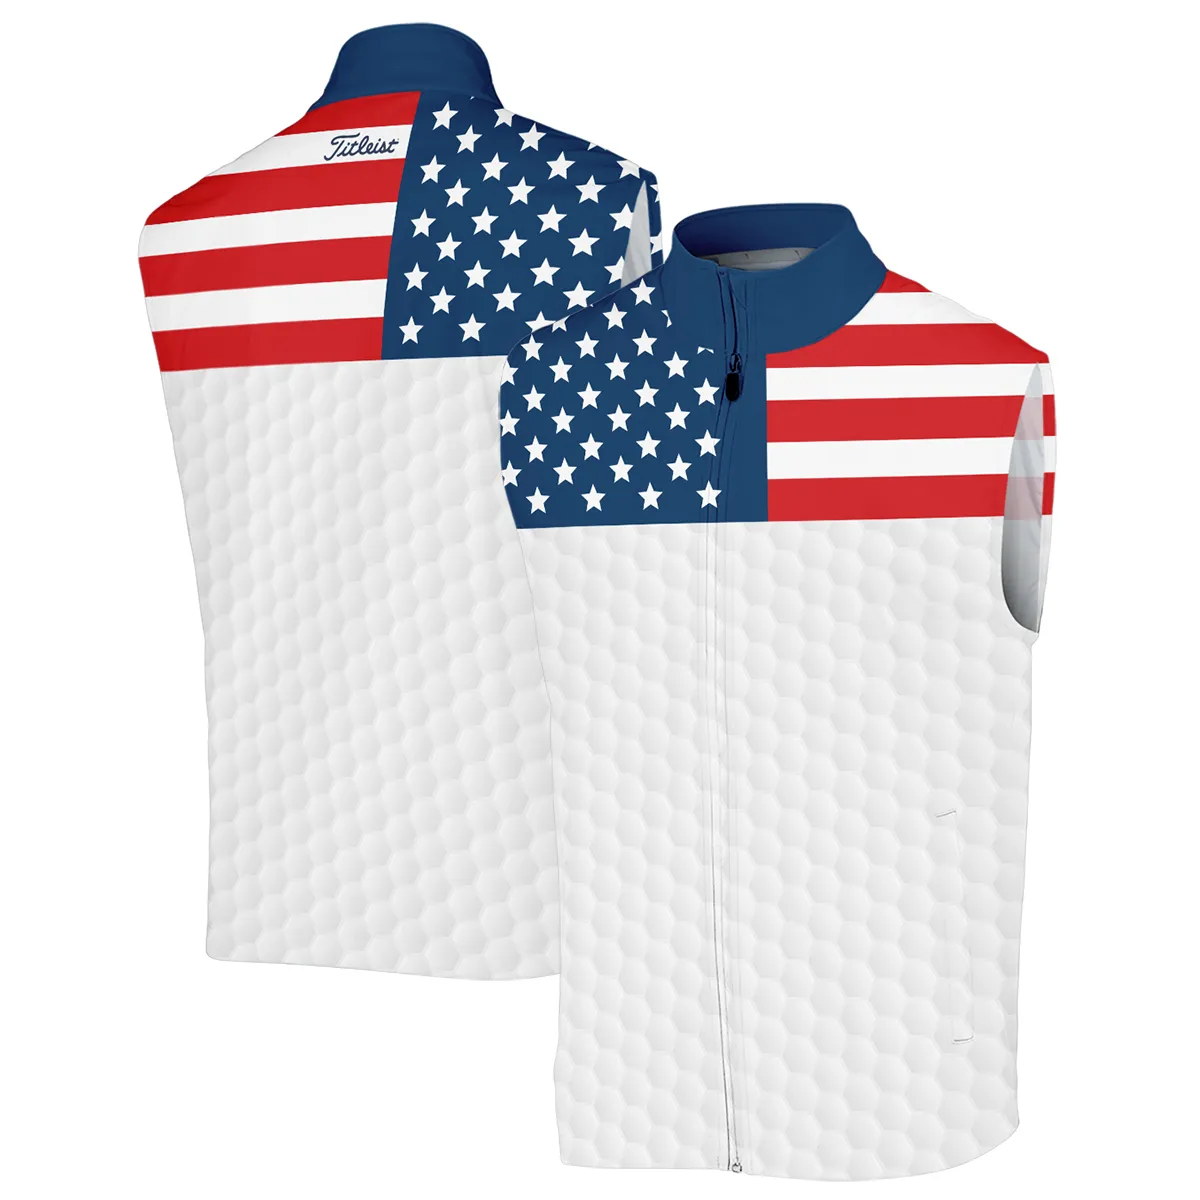 The Golfing Legend Golf 124th U.S. Open Pinehurst Titleist Zipper Polo Shirt Style Classic